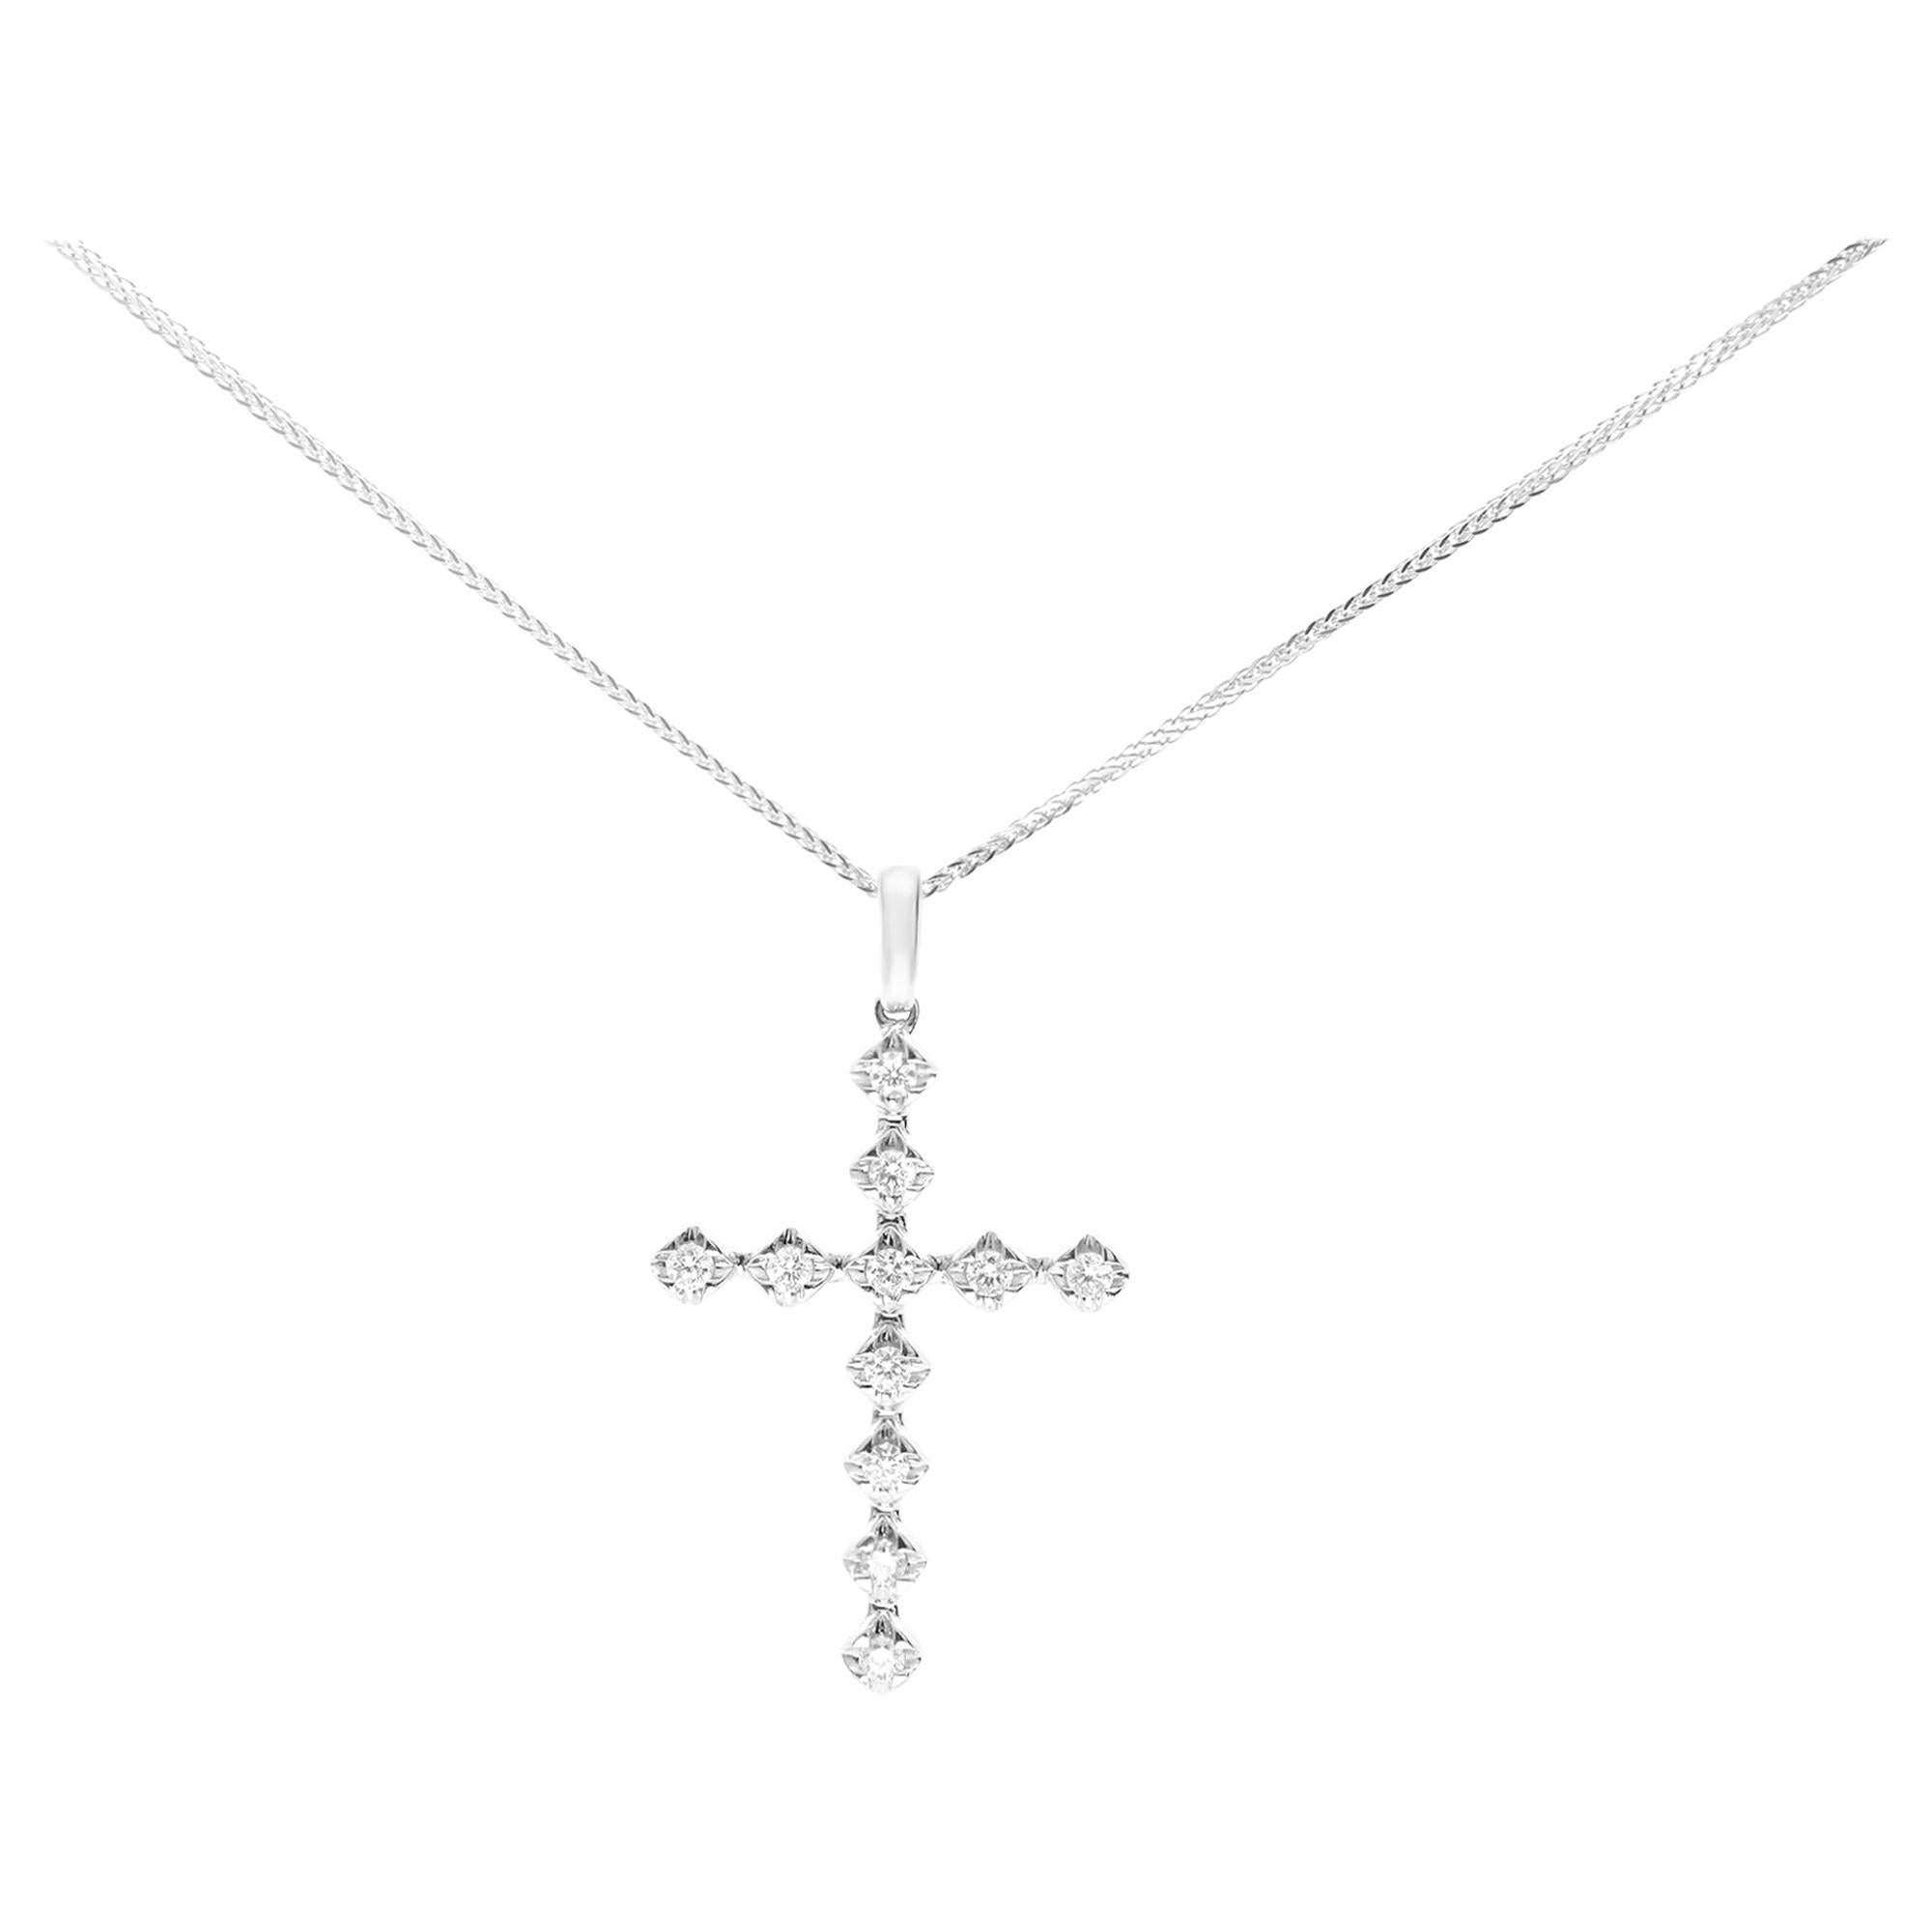 Rachel Koen 14k White Gold Diamond Cross Pendant 0.37cttw For Sale